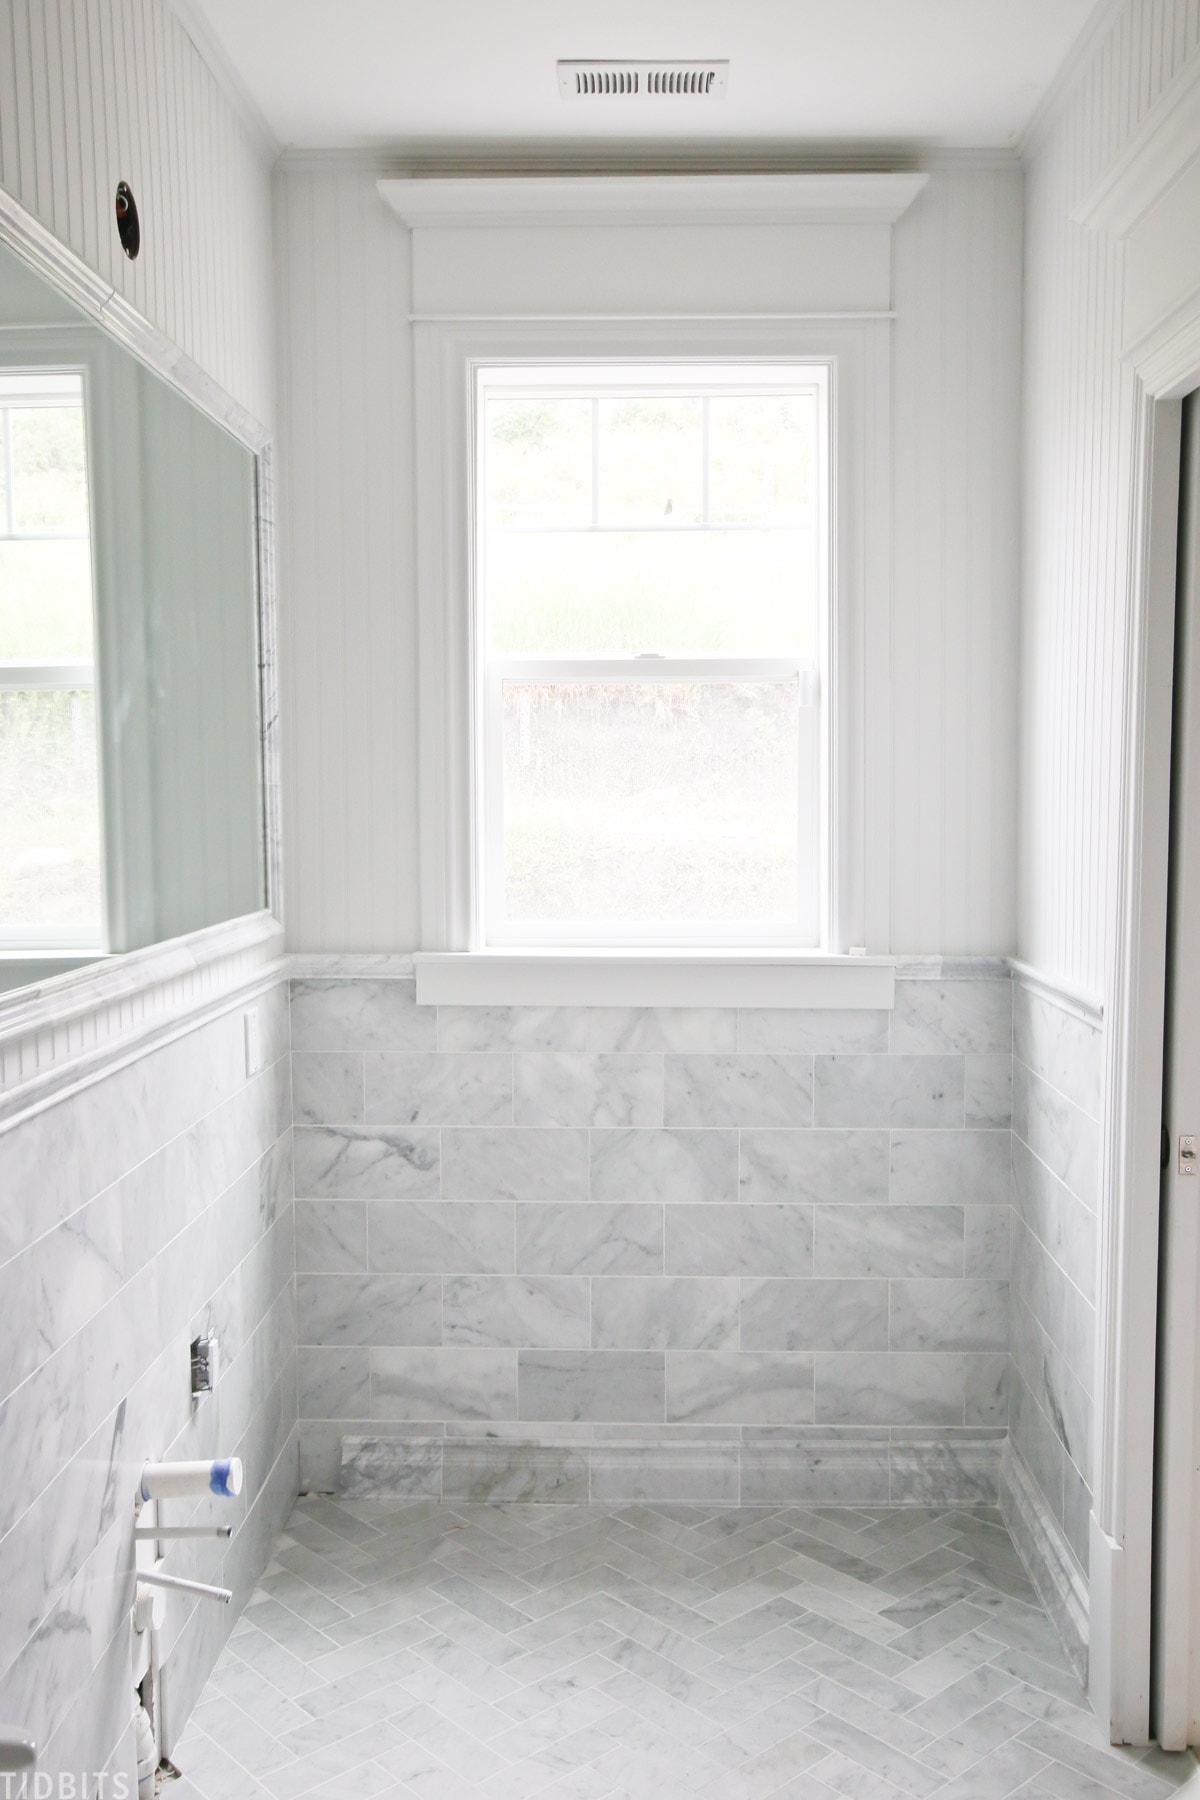 Installing marble tile in bathroom